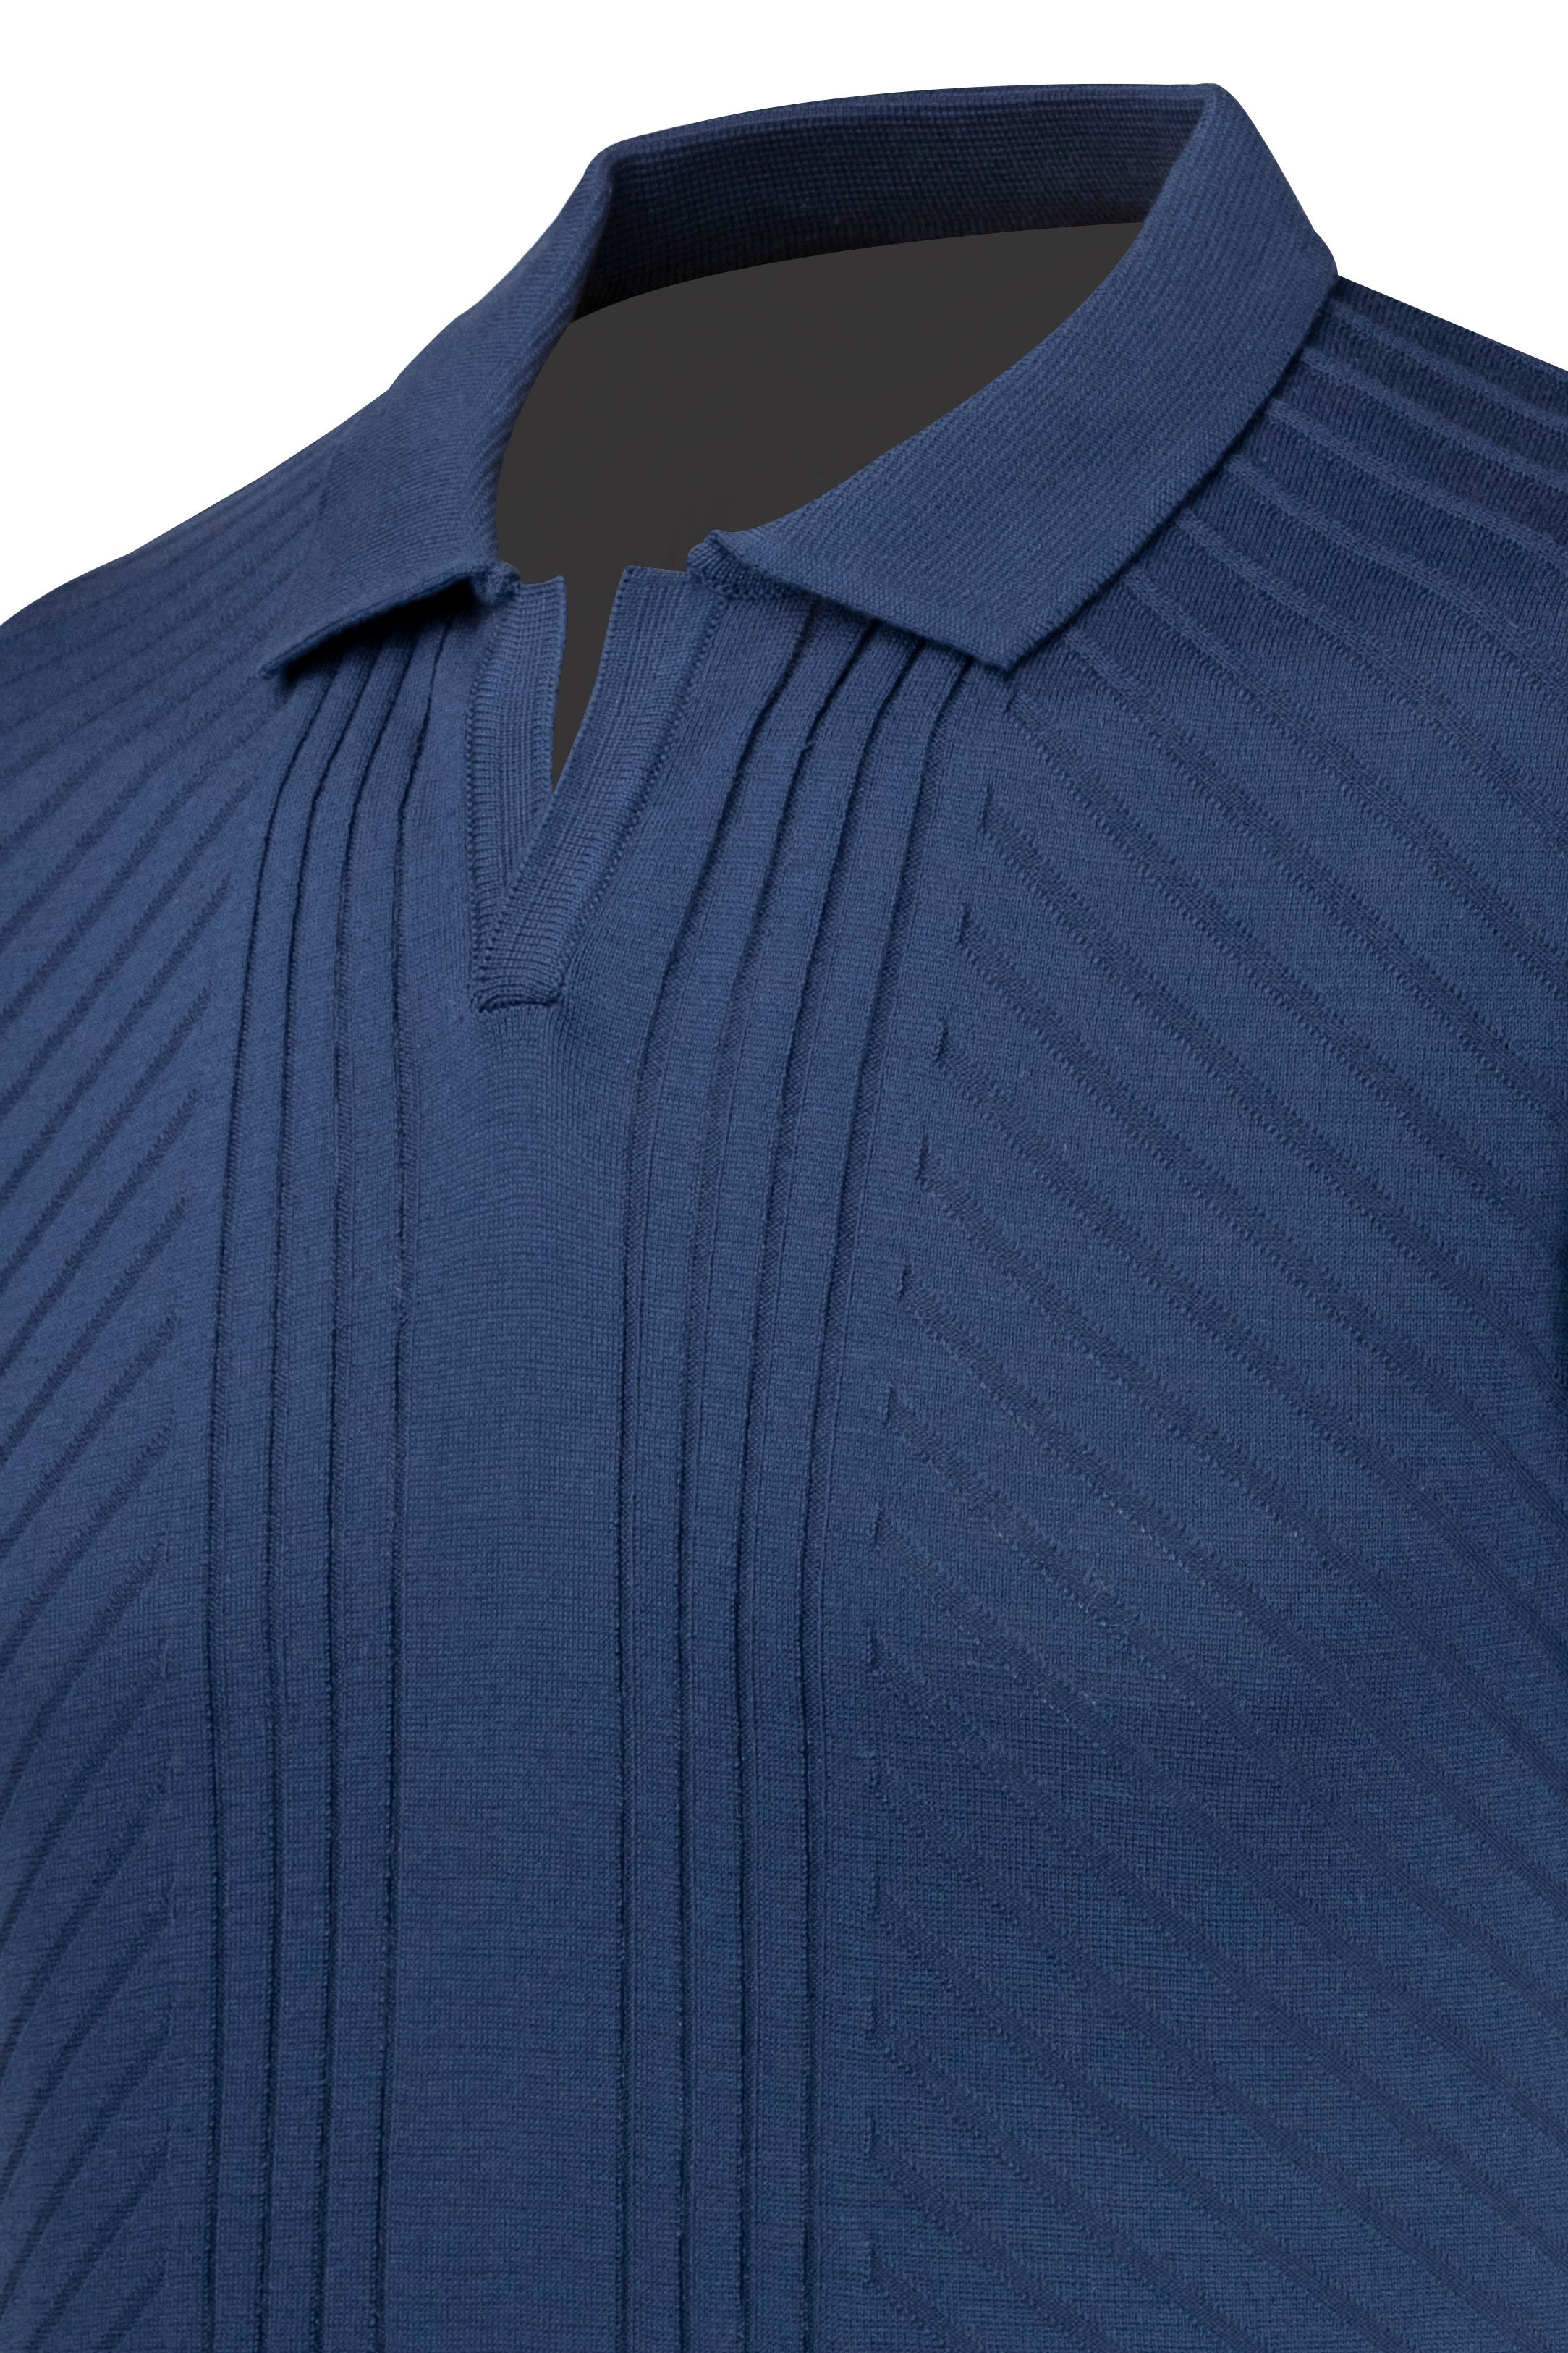 Erkek Yazlık Triko Tişört Kıvrılmaz Polo Yaka Regular Kalıp - İNDİGO